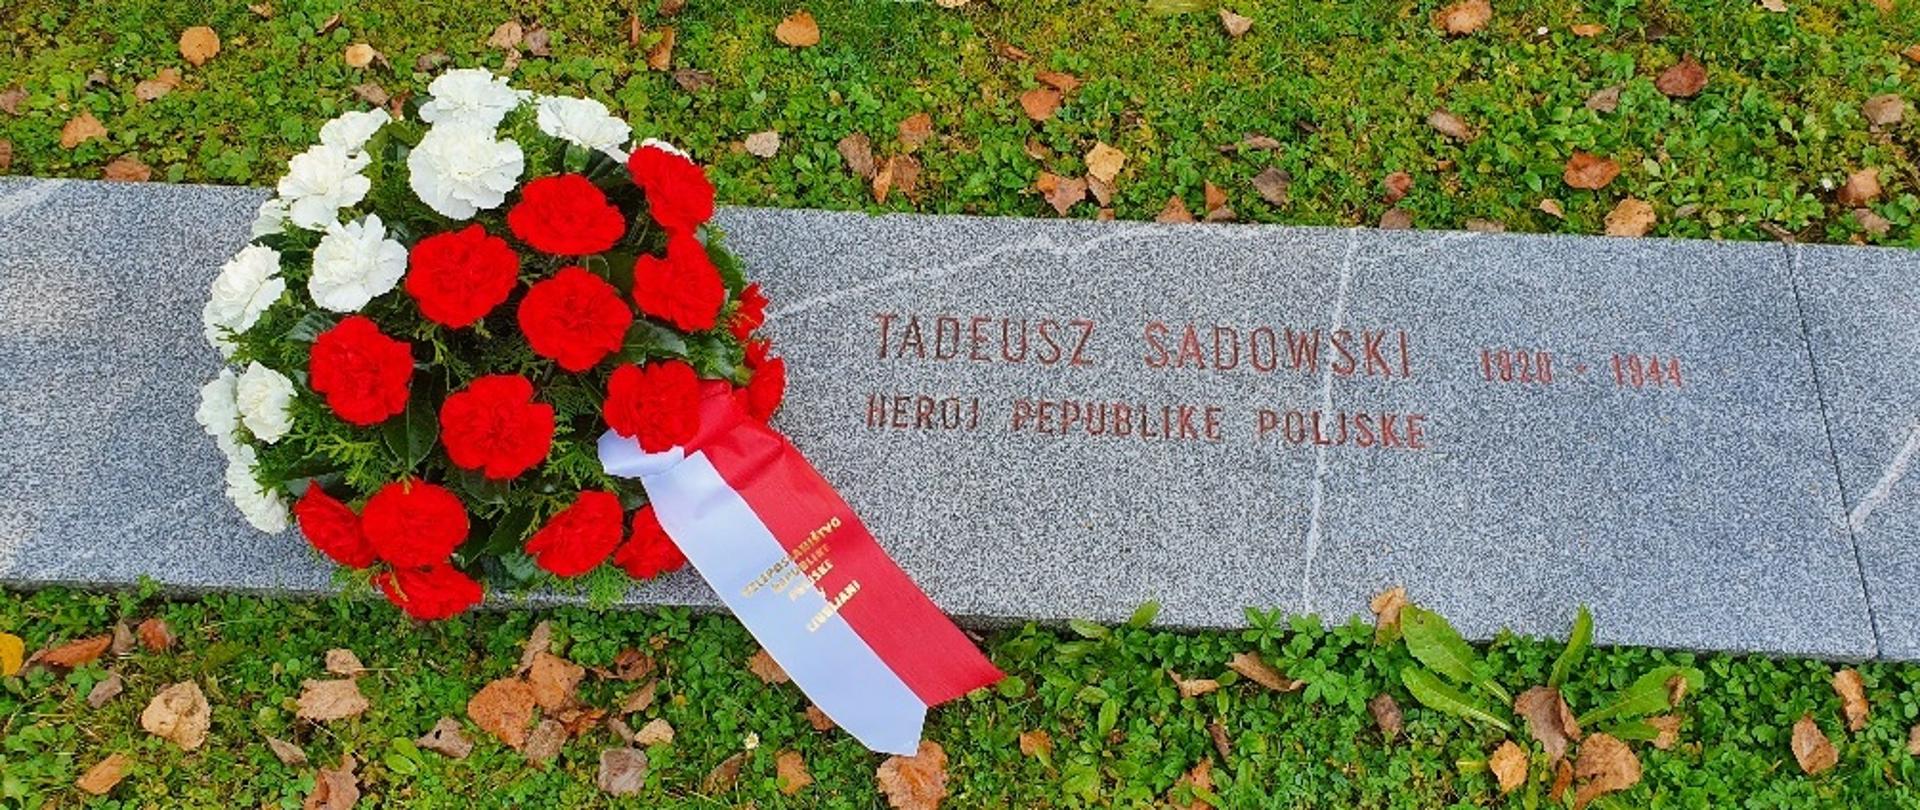 Tadeusz Sadowski